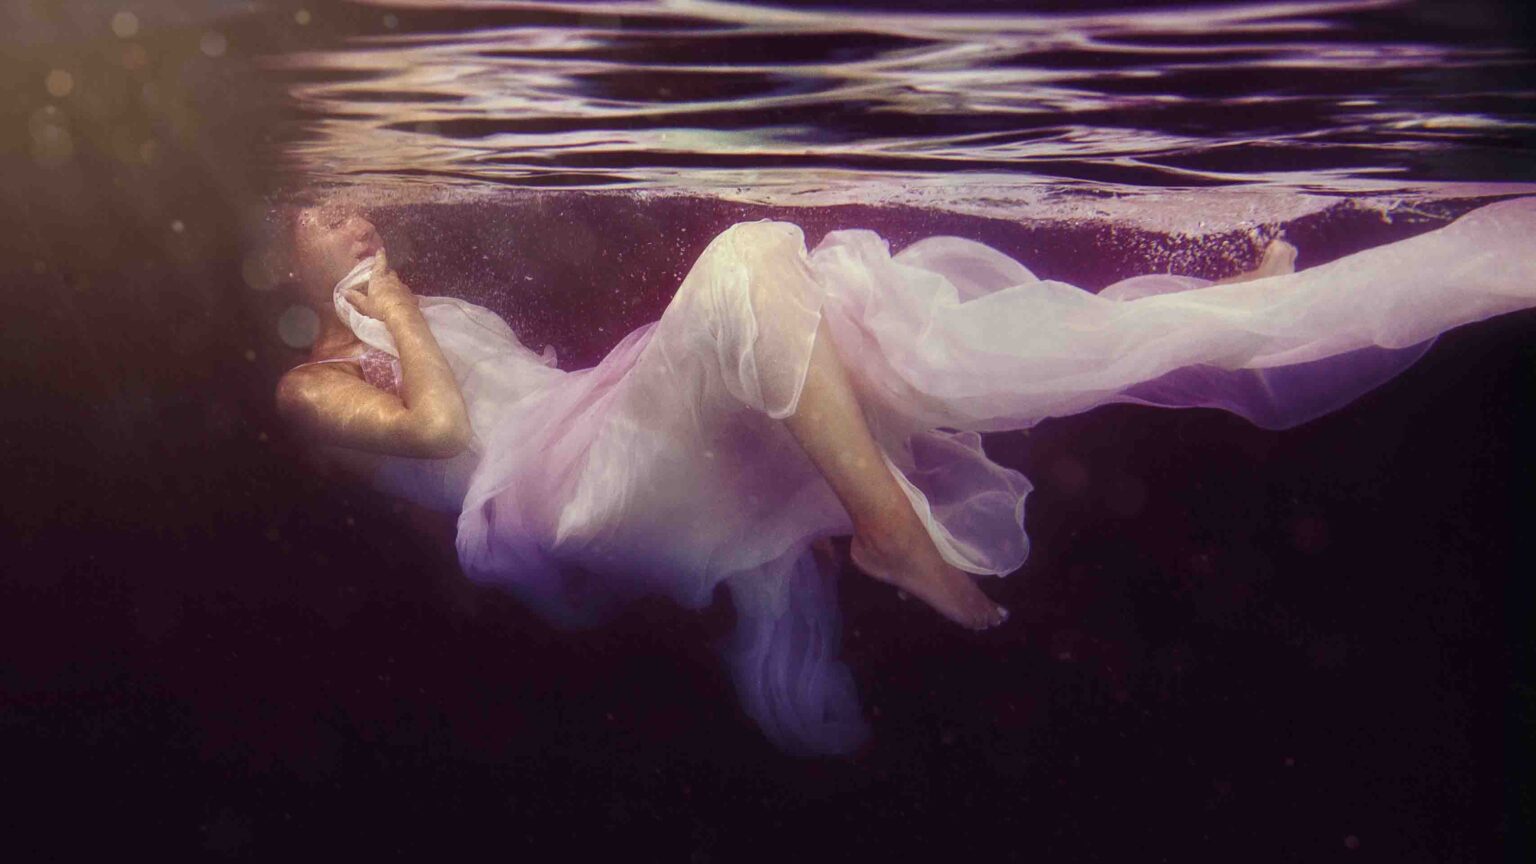 unterwasser shooting aussergewöhnlich fotografie Glamour Magic Portrait fineart Berlin underwater